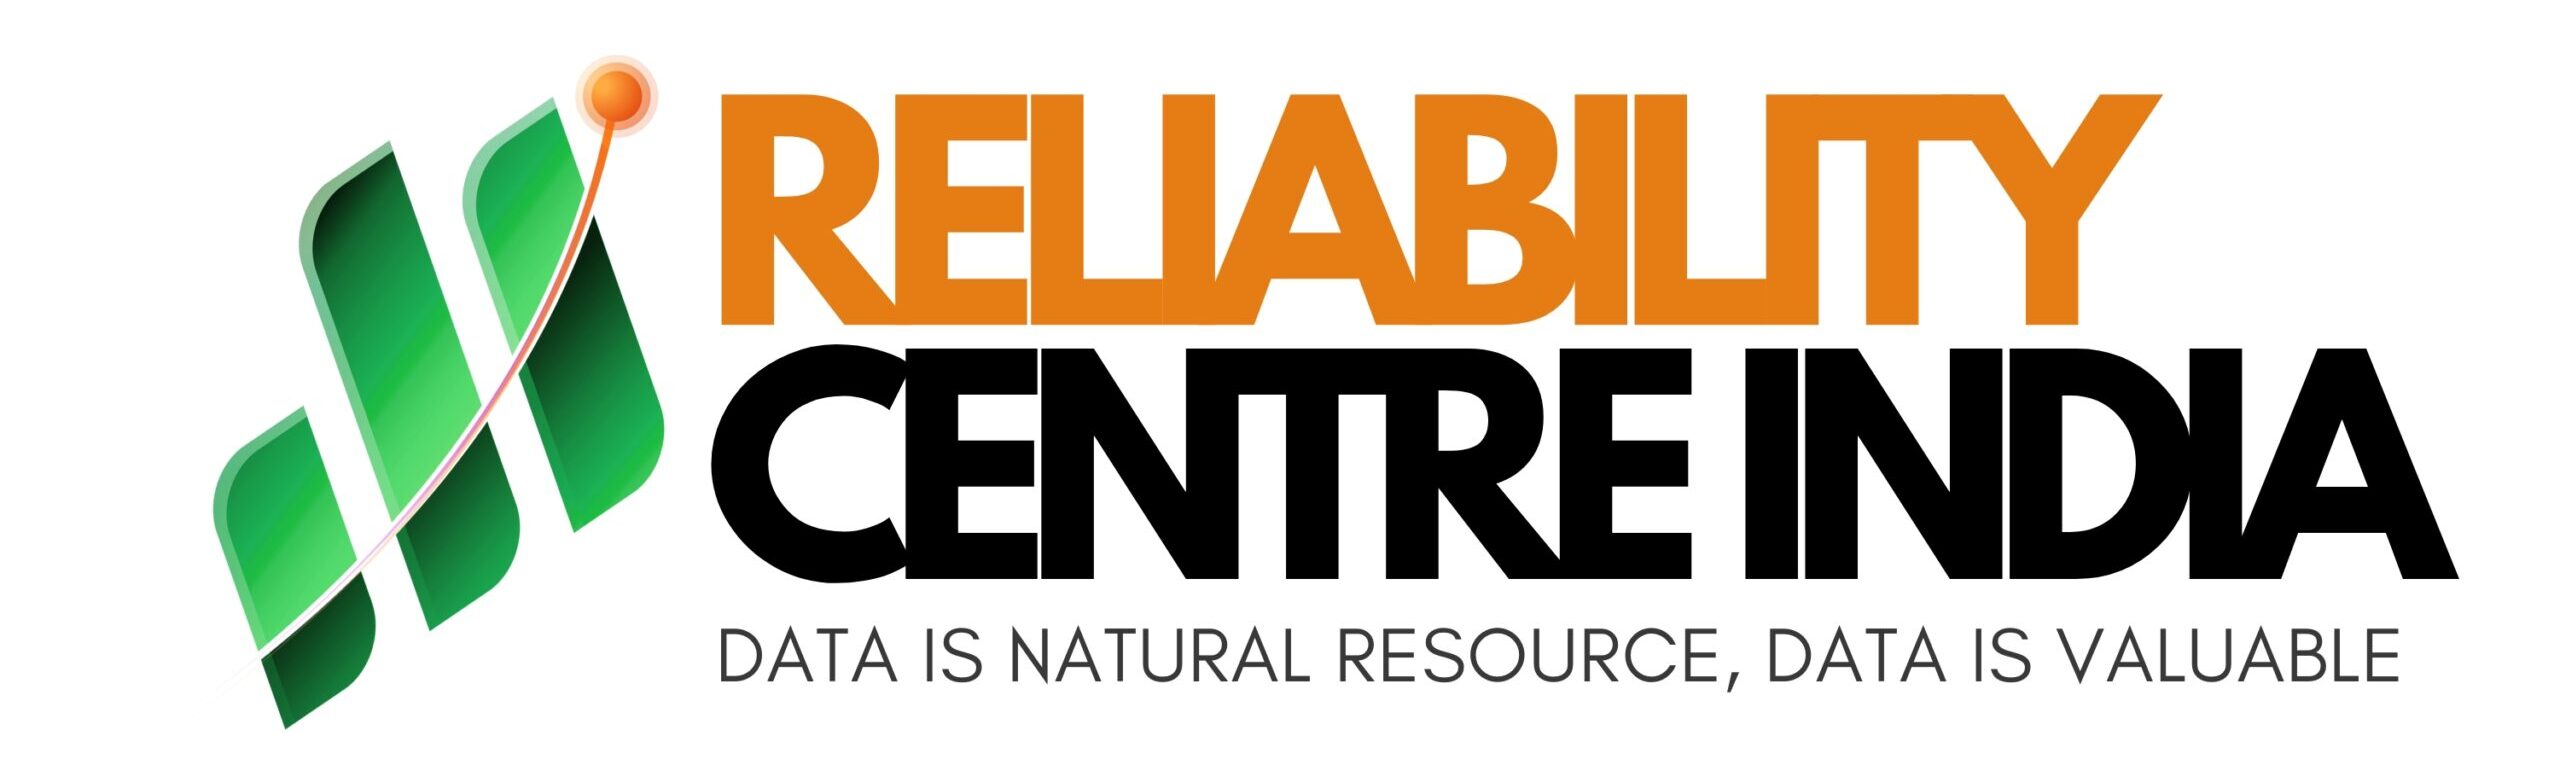 Reliability Centre India